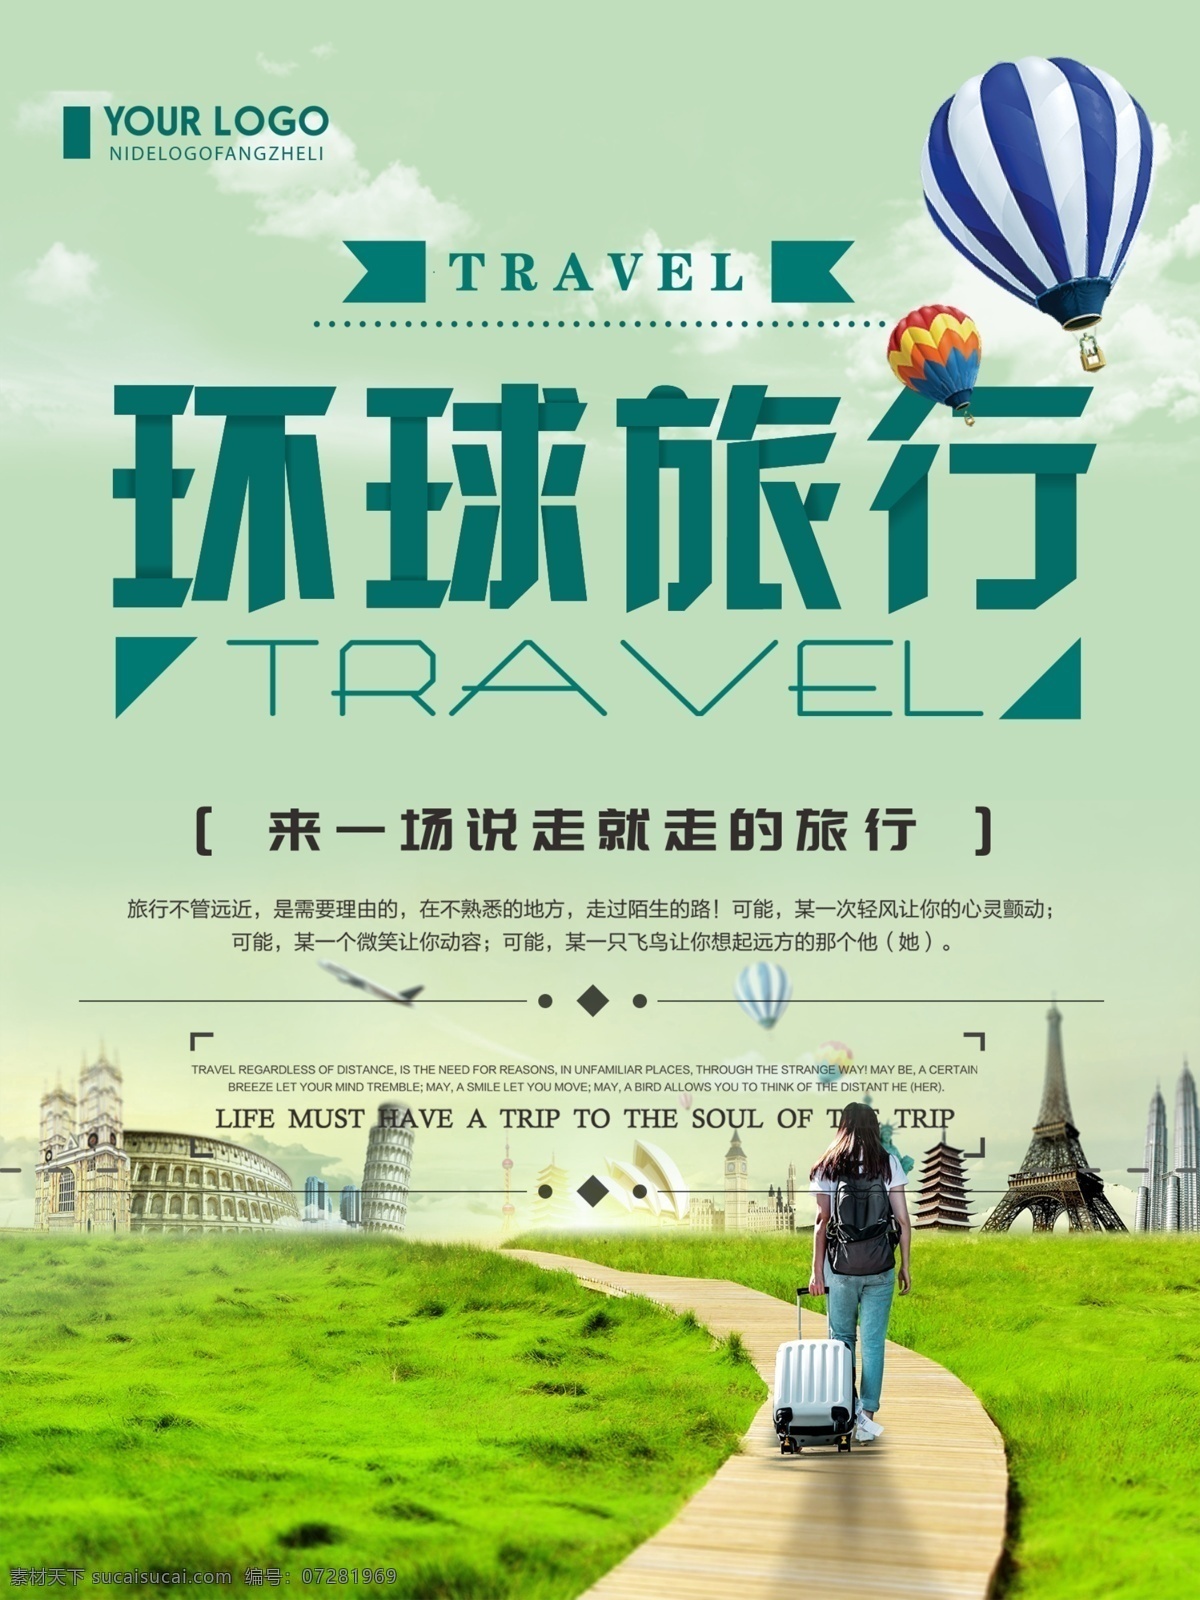 环球 旅行 宣传海报 环球旅行宣传 旅行海报 旅游海报 环球旅行 小清新 旅游 热气球 沙滩 叶子